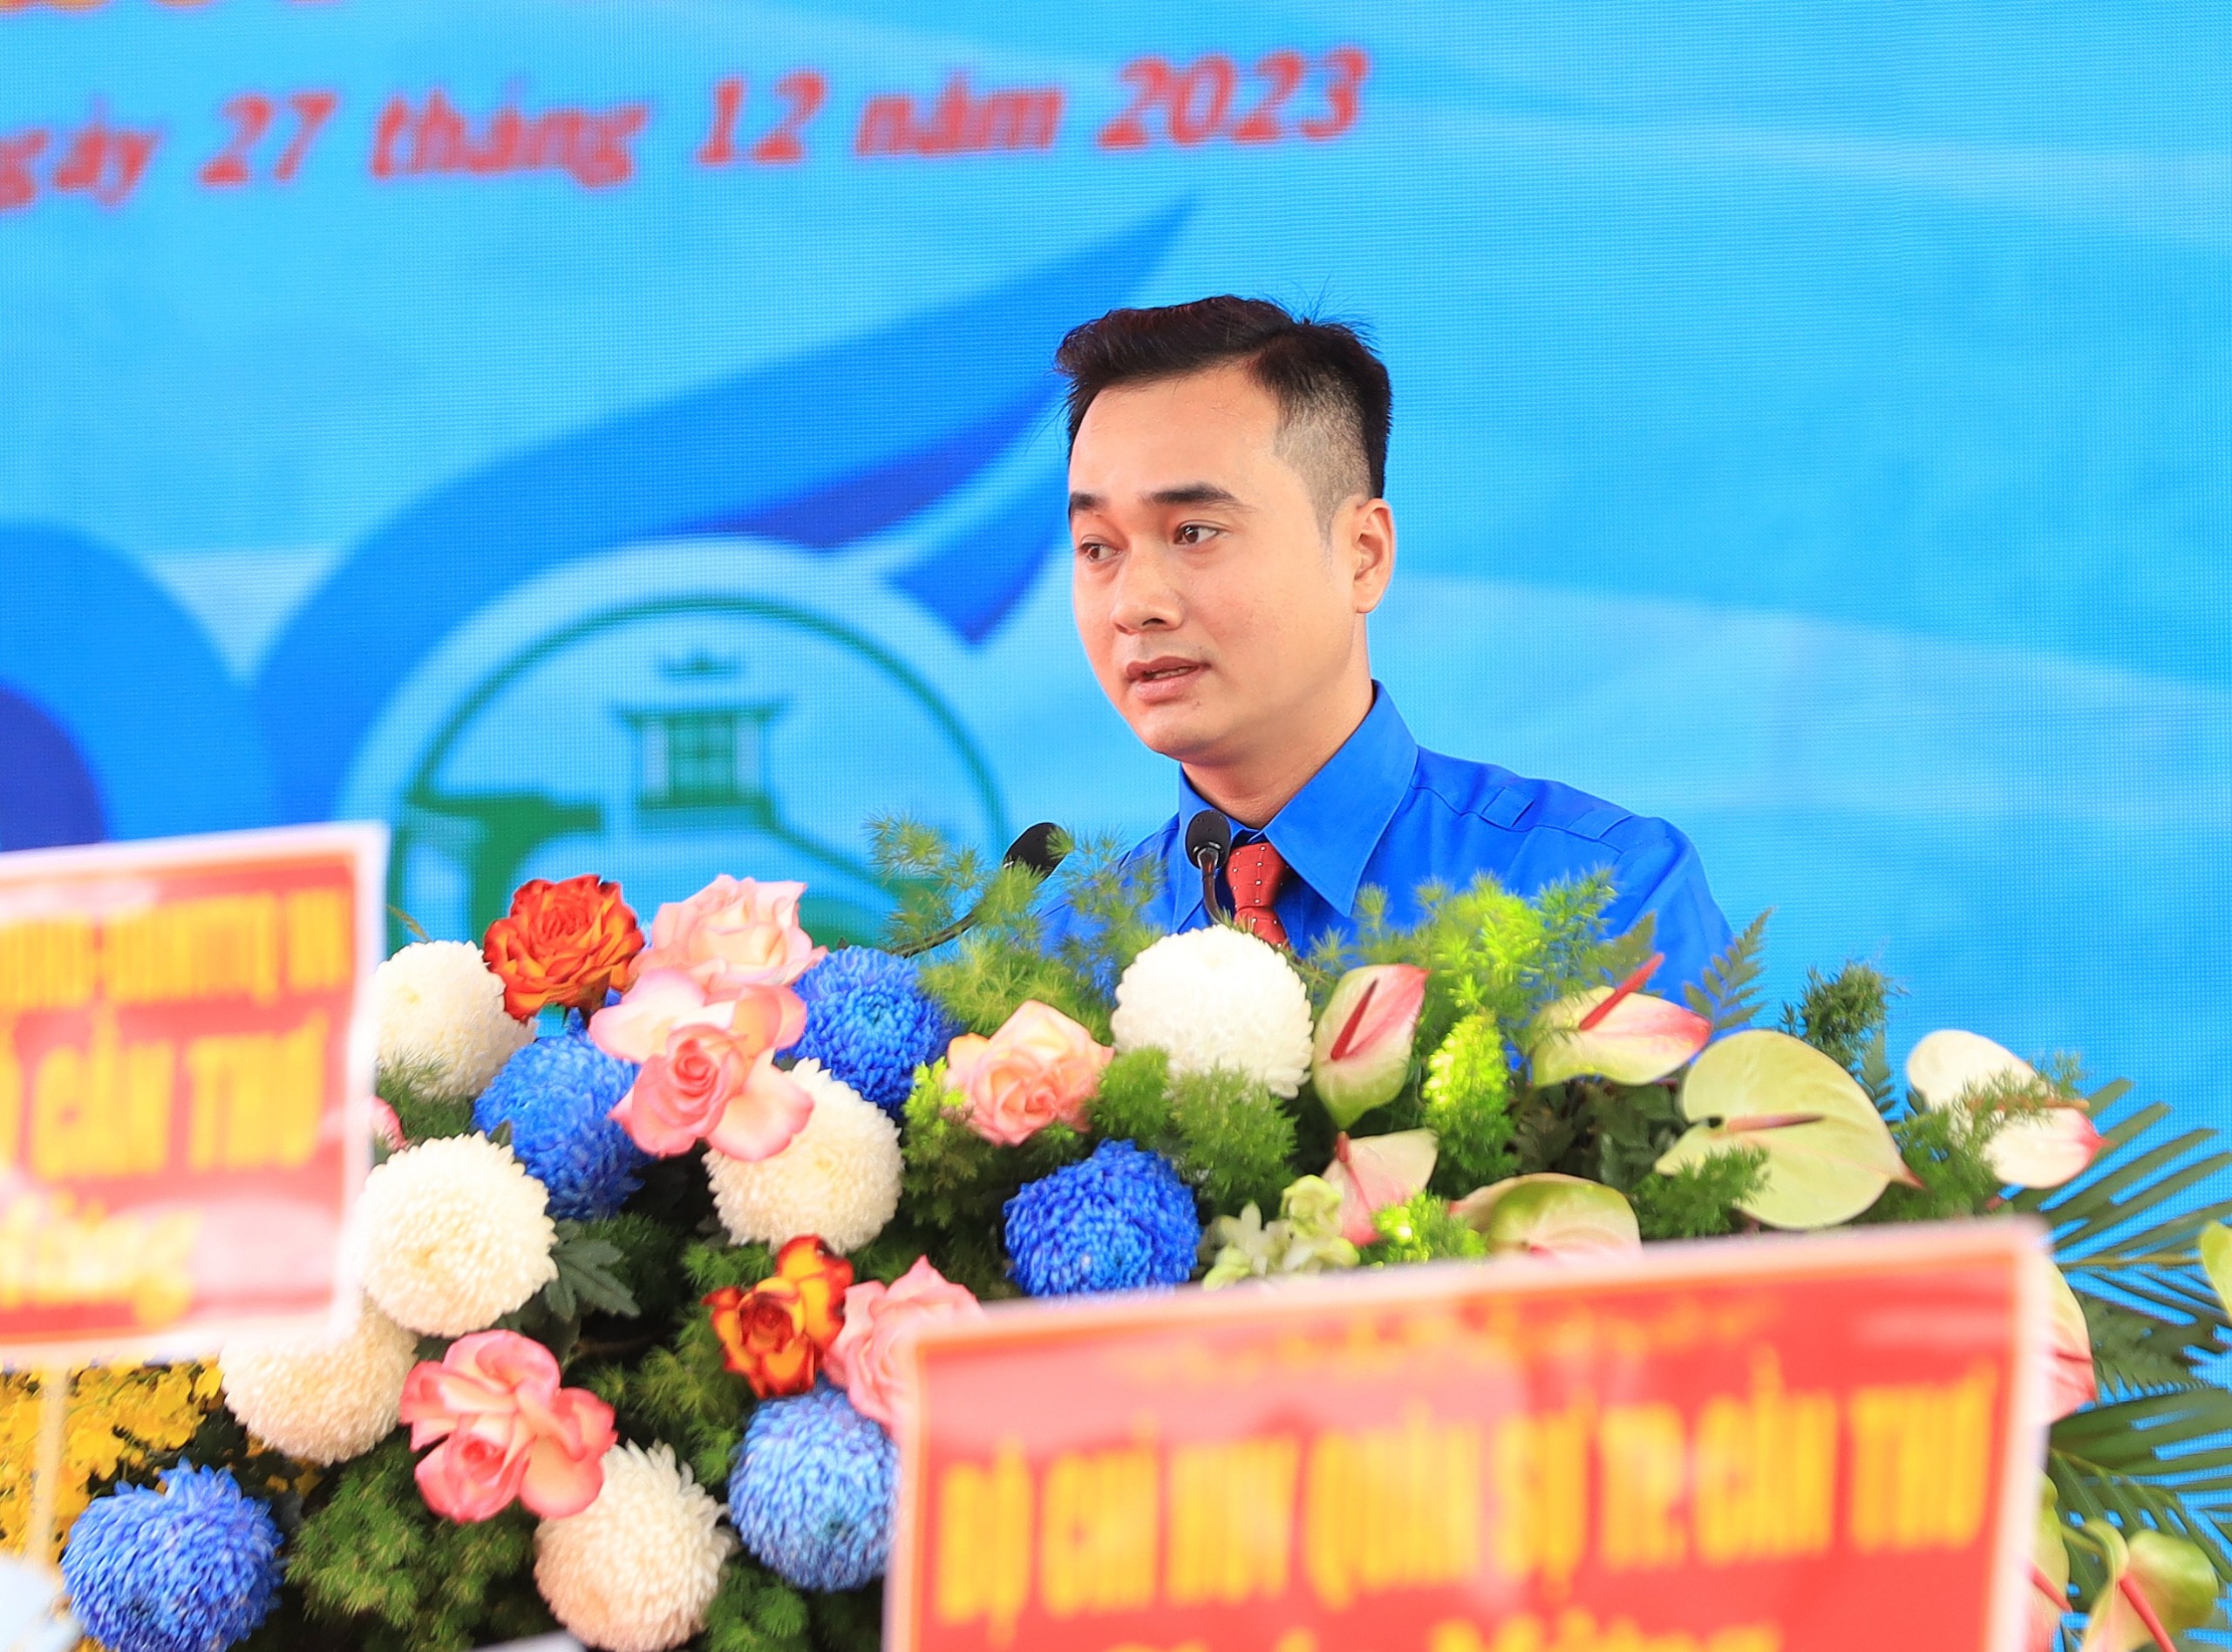 Bí thư Quận đoàn Ô Môn - Trần Thanh Nam thay mặt tuổi trẻ Ô Môn phát biểu tại buổi lễ.